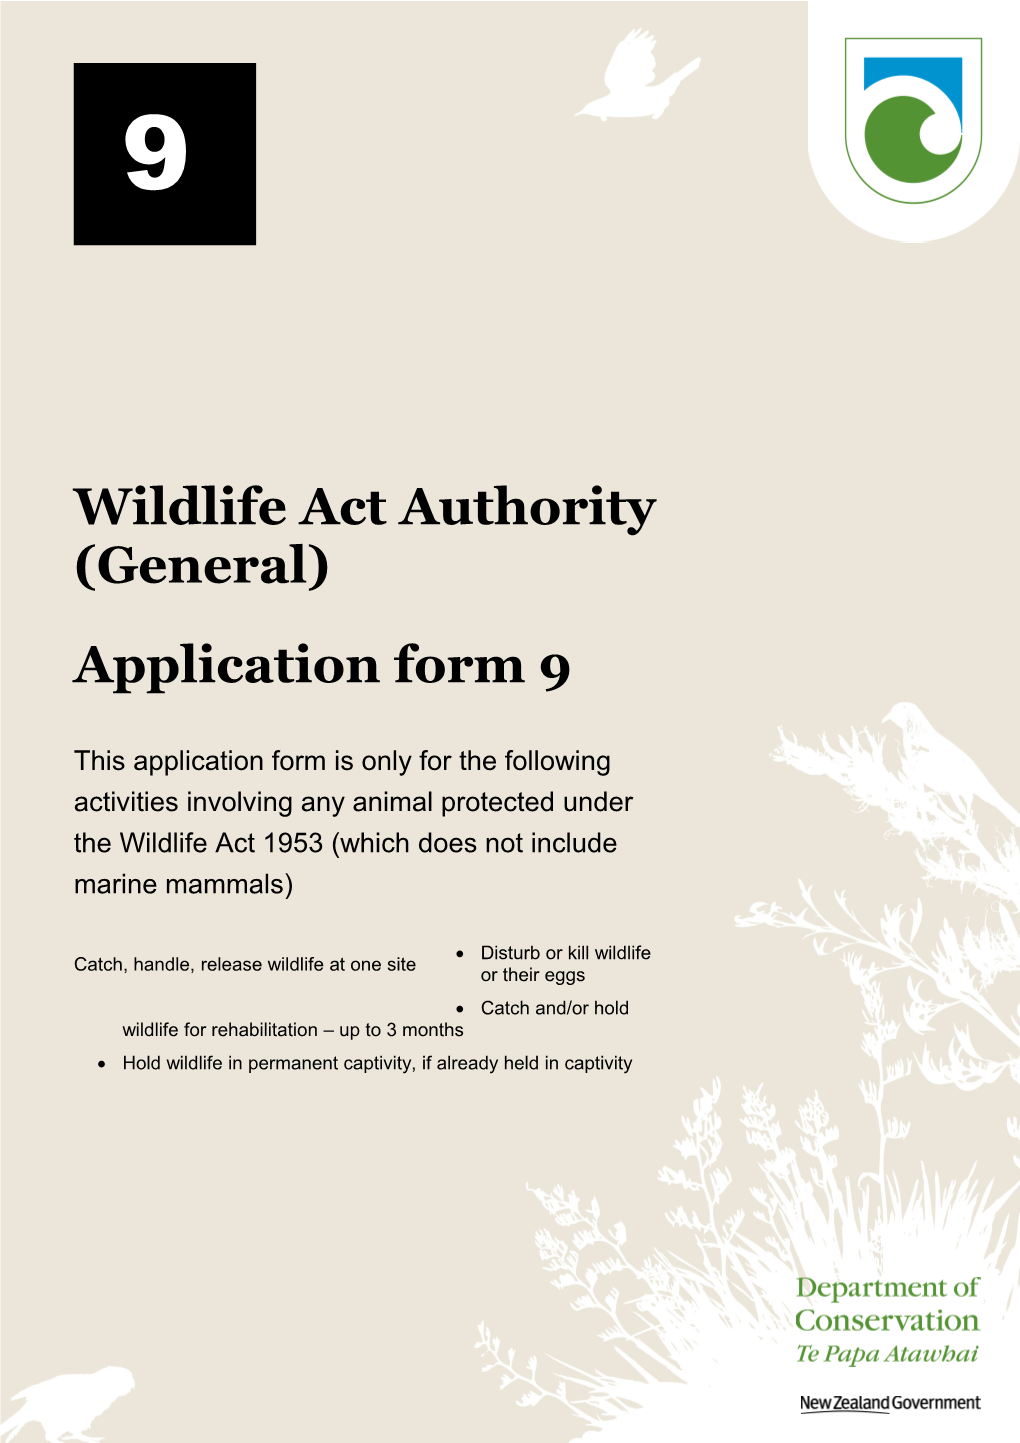 Wildlife Act Authority (General)